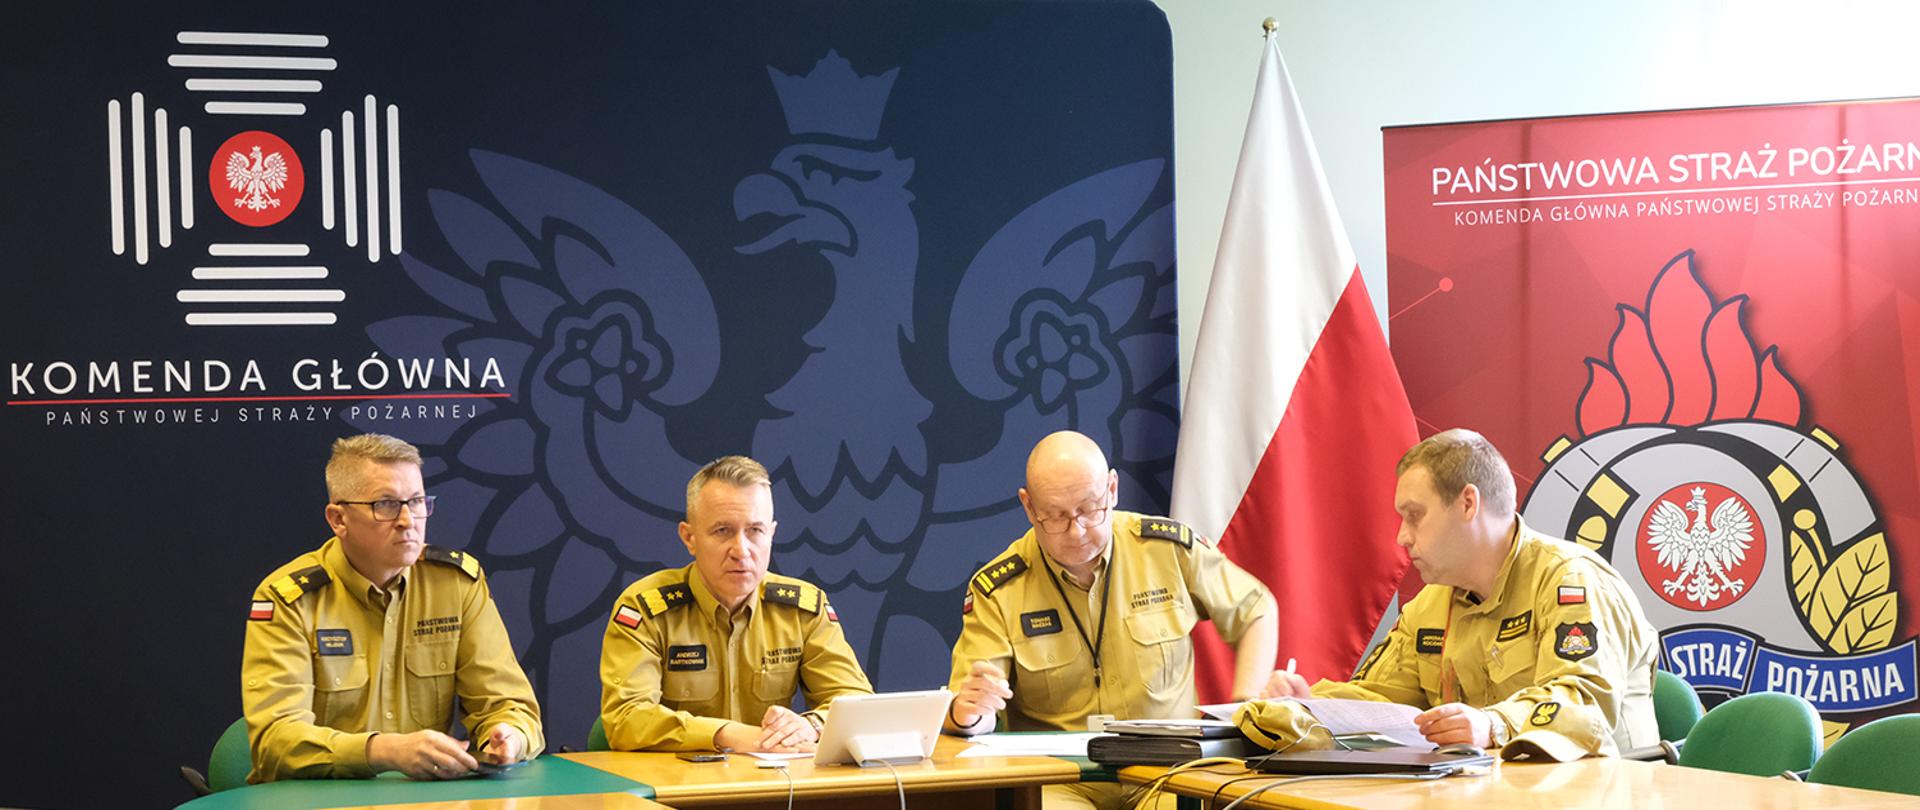 Czterej mężczyźni w mundurach Straży Pożarnej siedzących przy stoliku w trakcje wideokonferencji. W tle flaga państwowa oraz ścianki z logotypami Państwowej Straży Pożarnej oraz Komendy Głównej Państwowej Straży Pożarnej